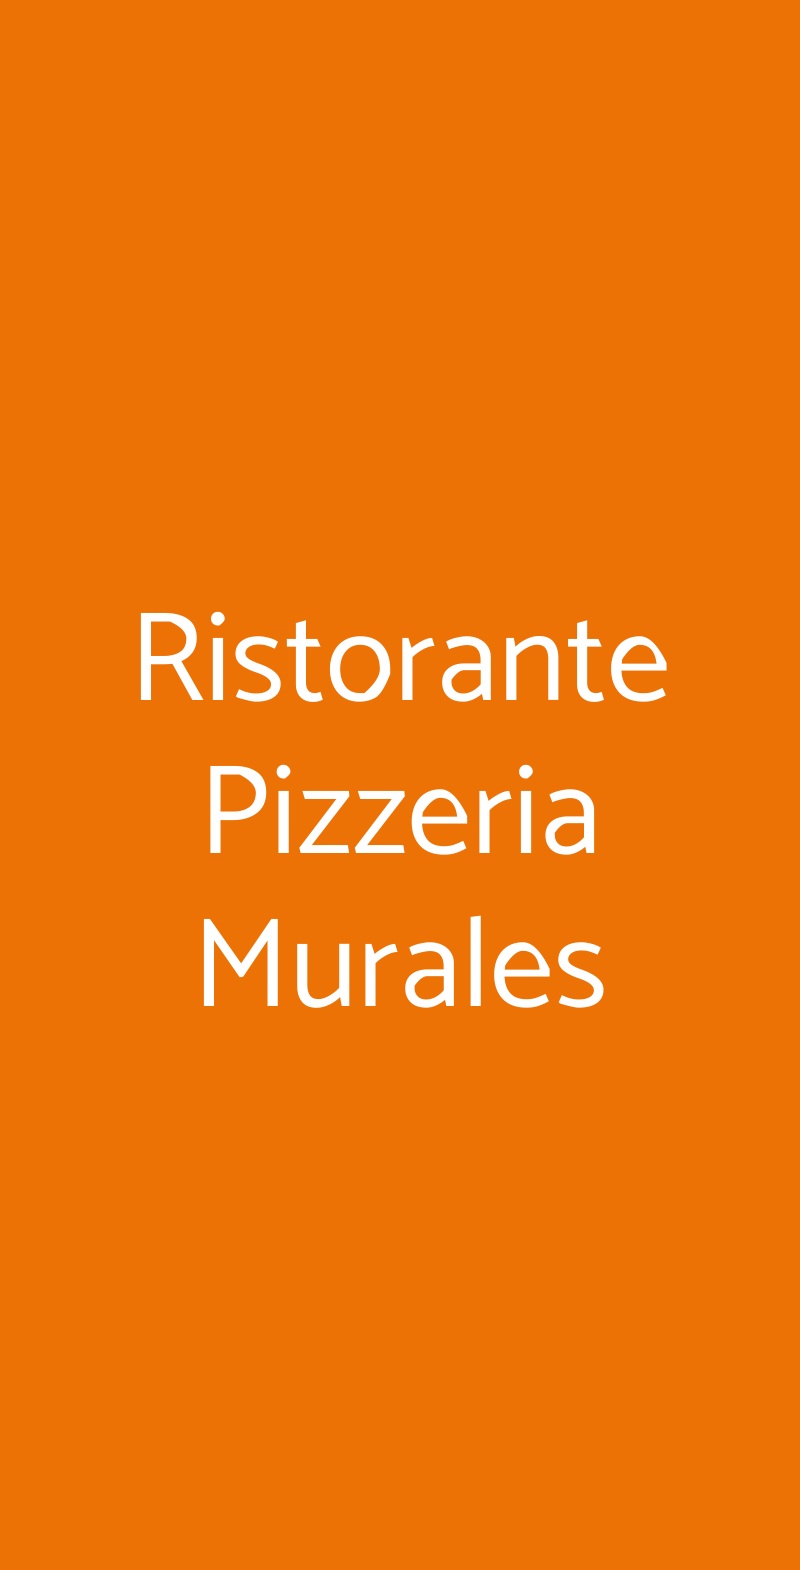 Ristorante Pizzeria Murales Milano menù 1 pagina